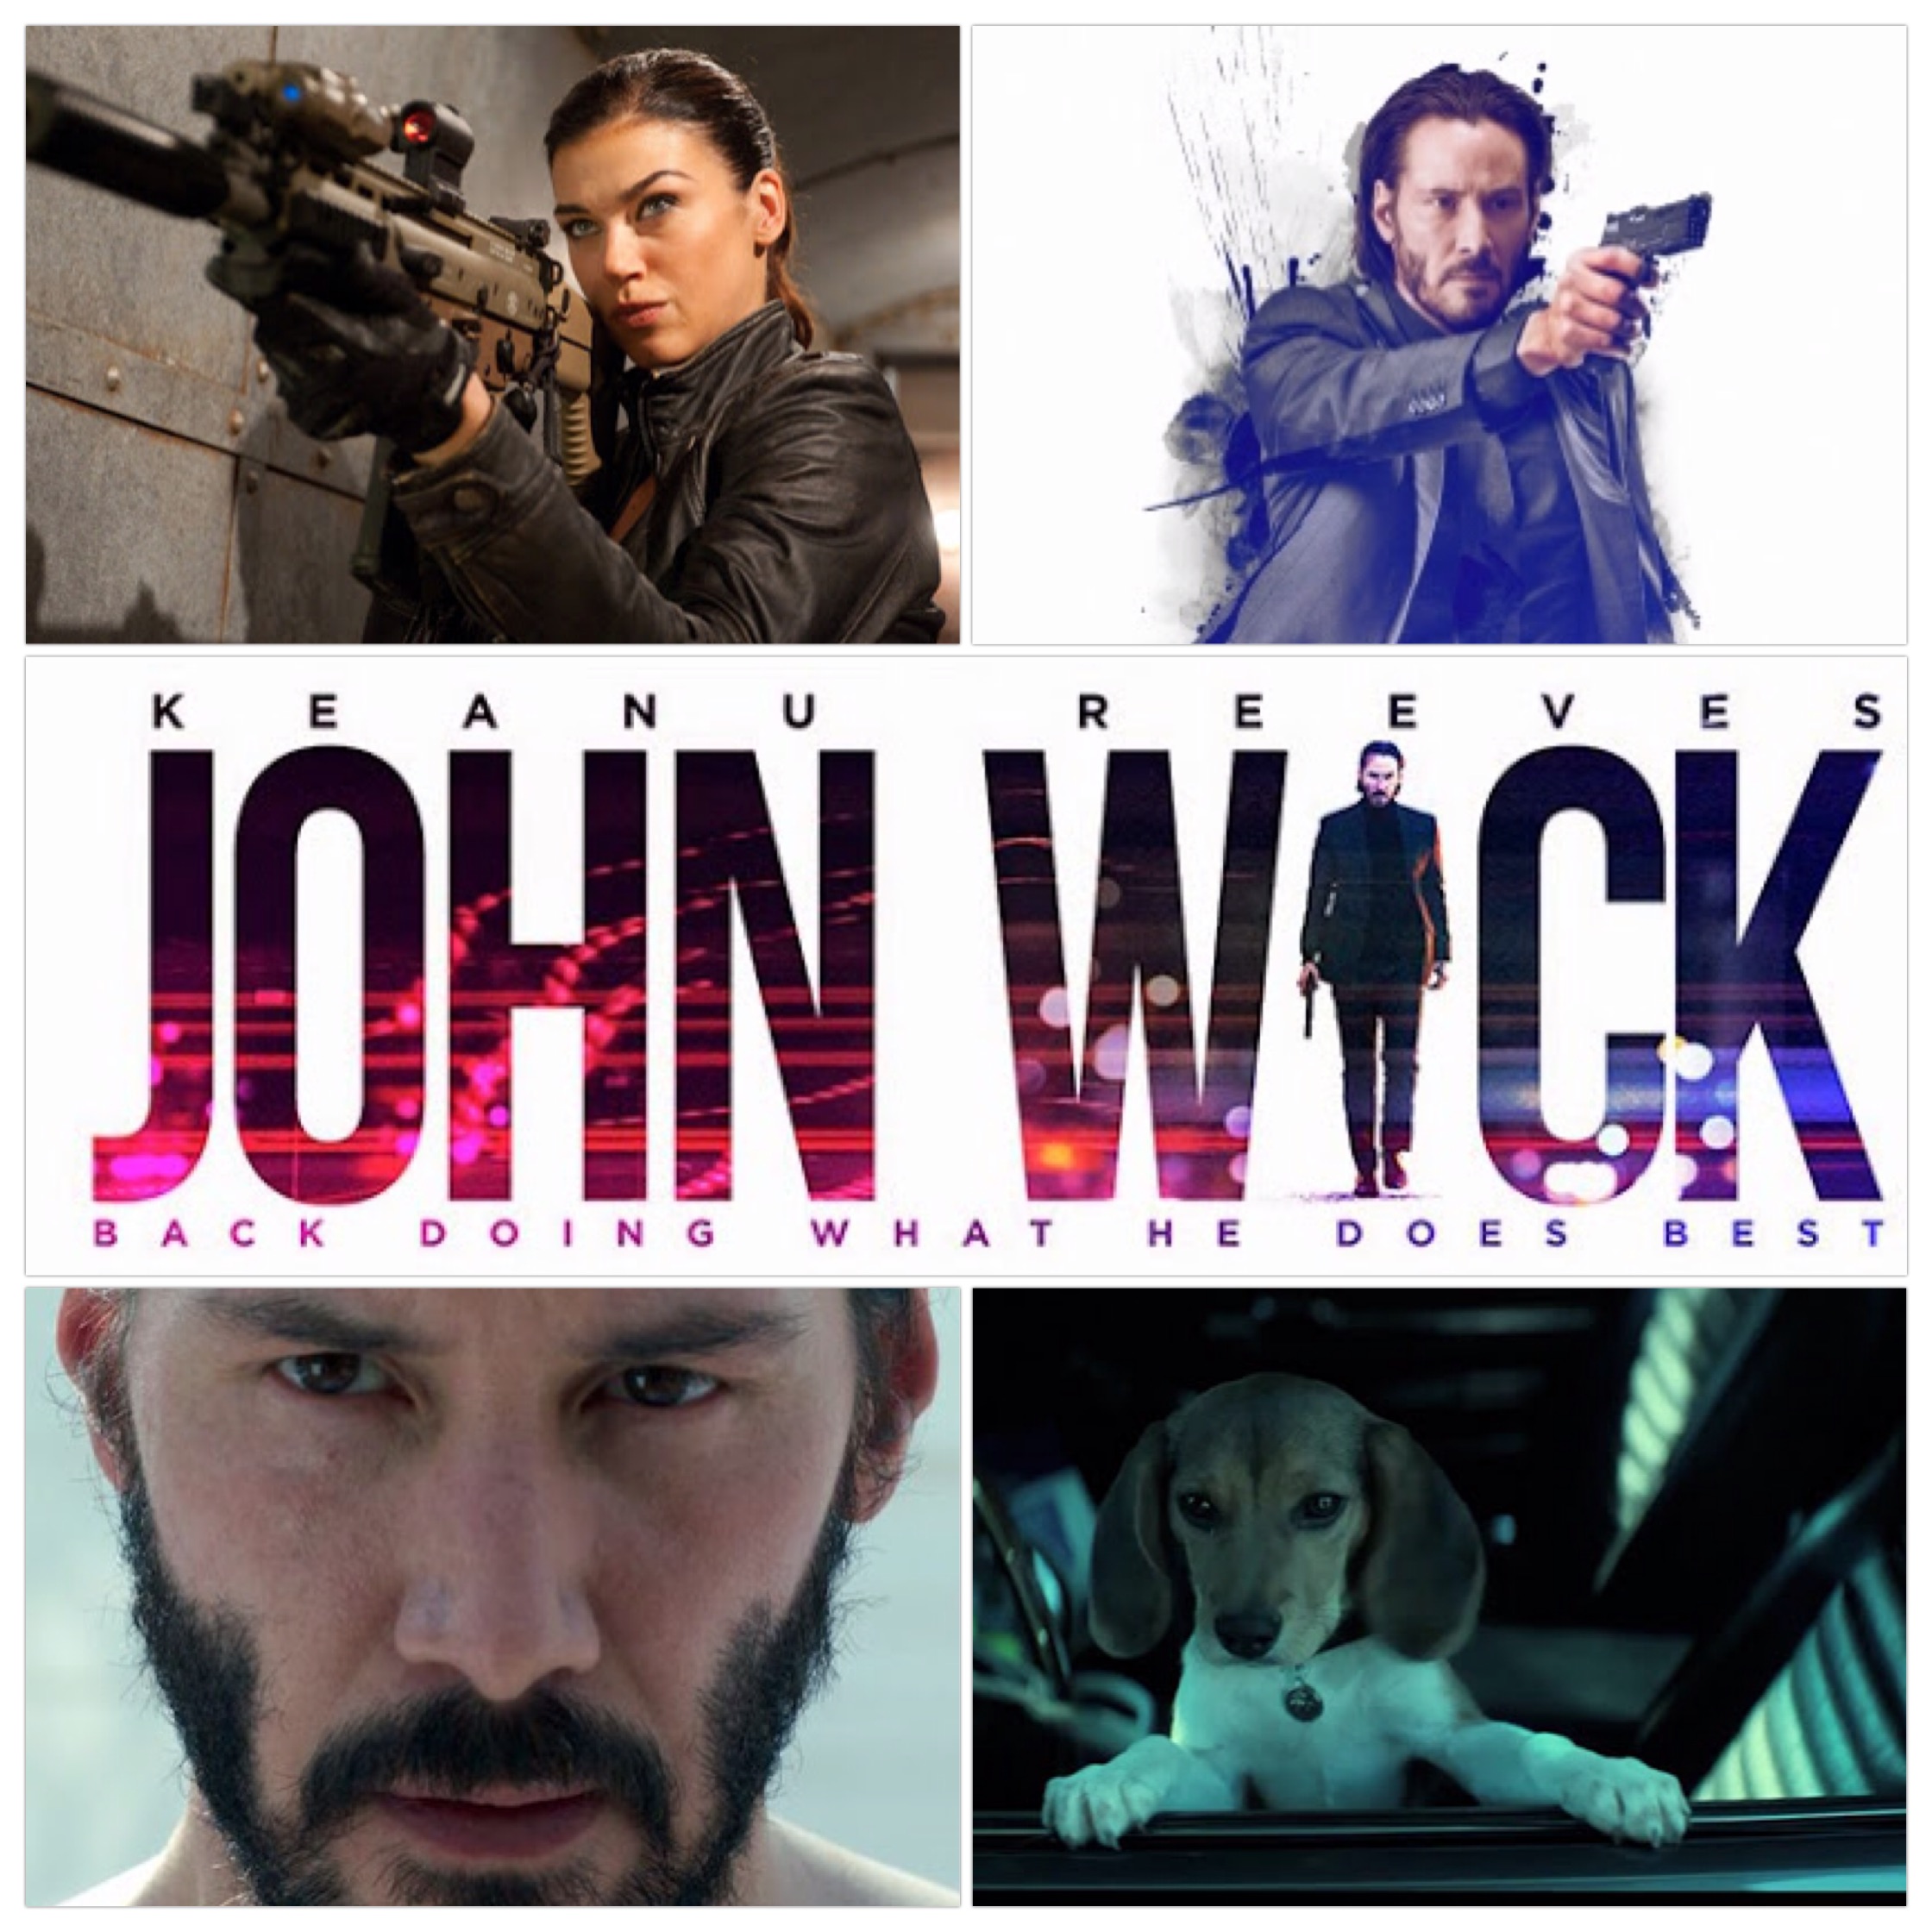 5 John Wick – De Volta ao Jogo (2014) – 365 filmes em 365 dias